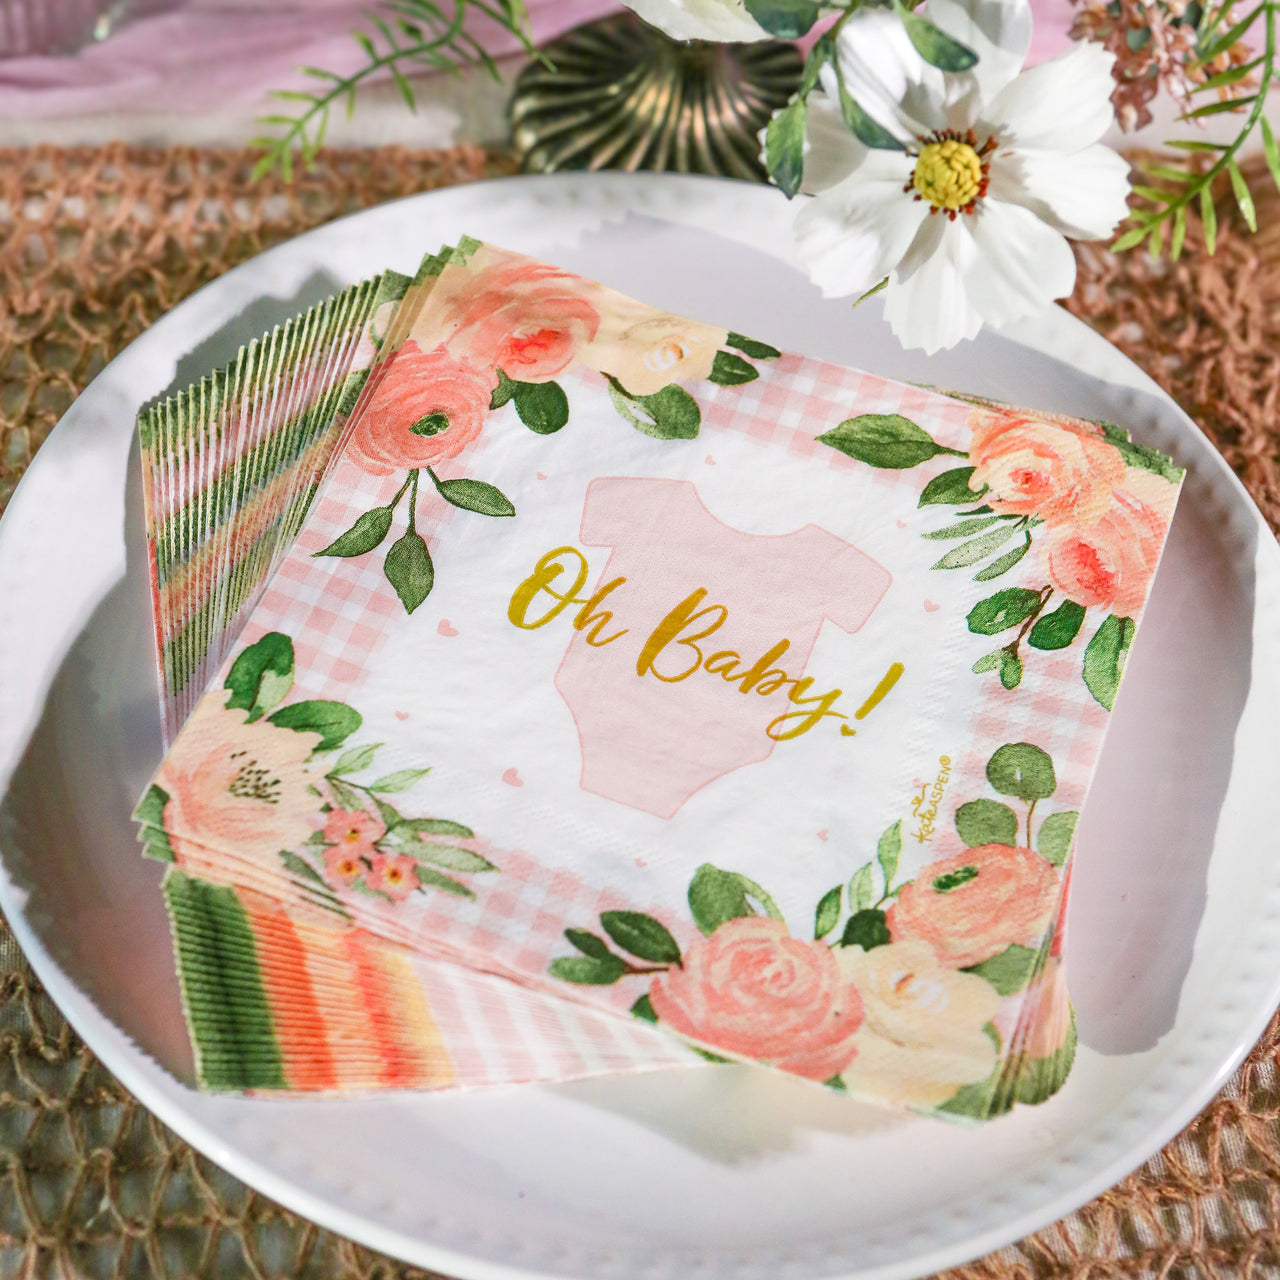 Baby Shower Onesie Tableware Set - Pink Floral